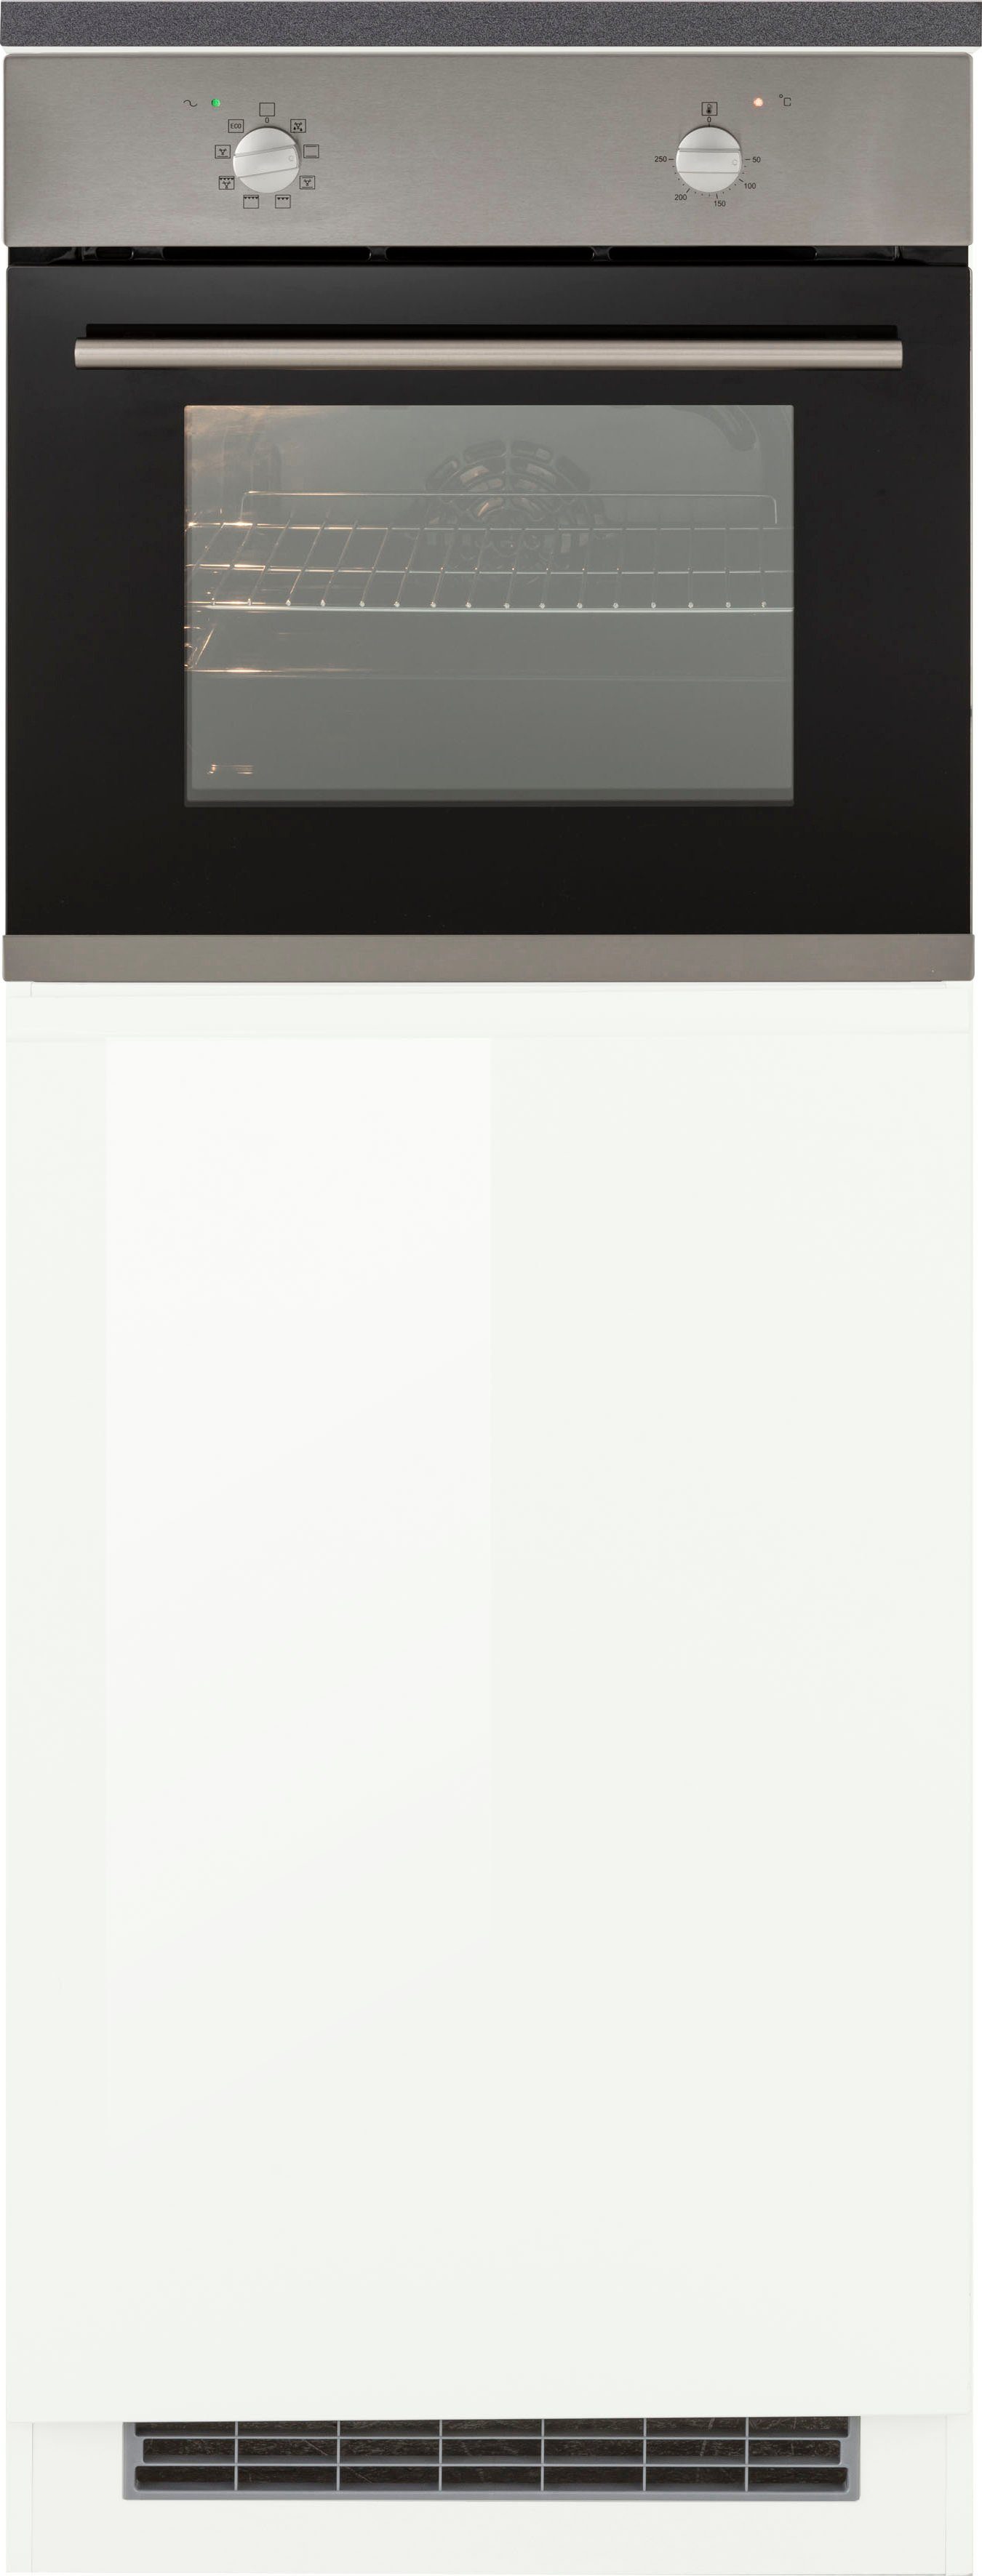 HELD MÖBEL Backofen/Kühlumbauschrank Virginia 60 cm weiß Hochglanz/anthrazit | weiß breit